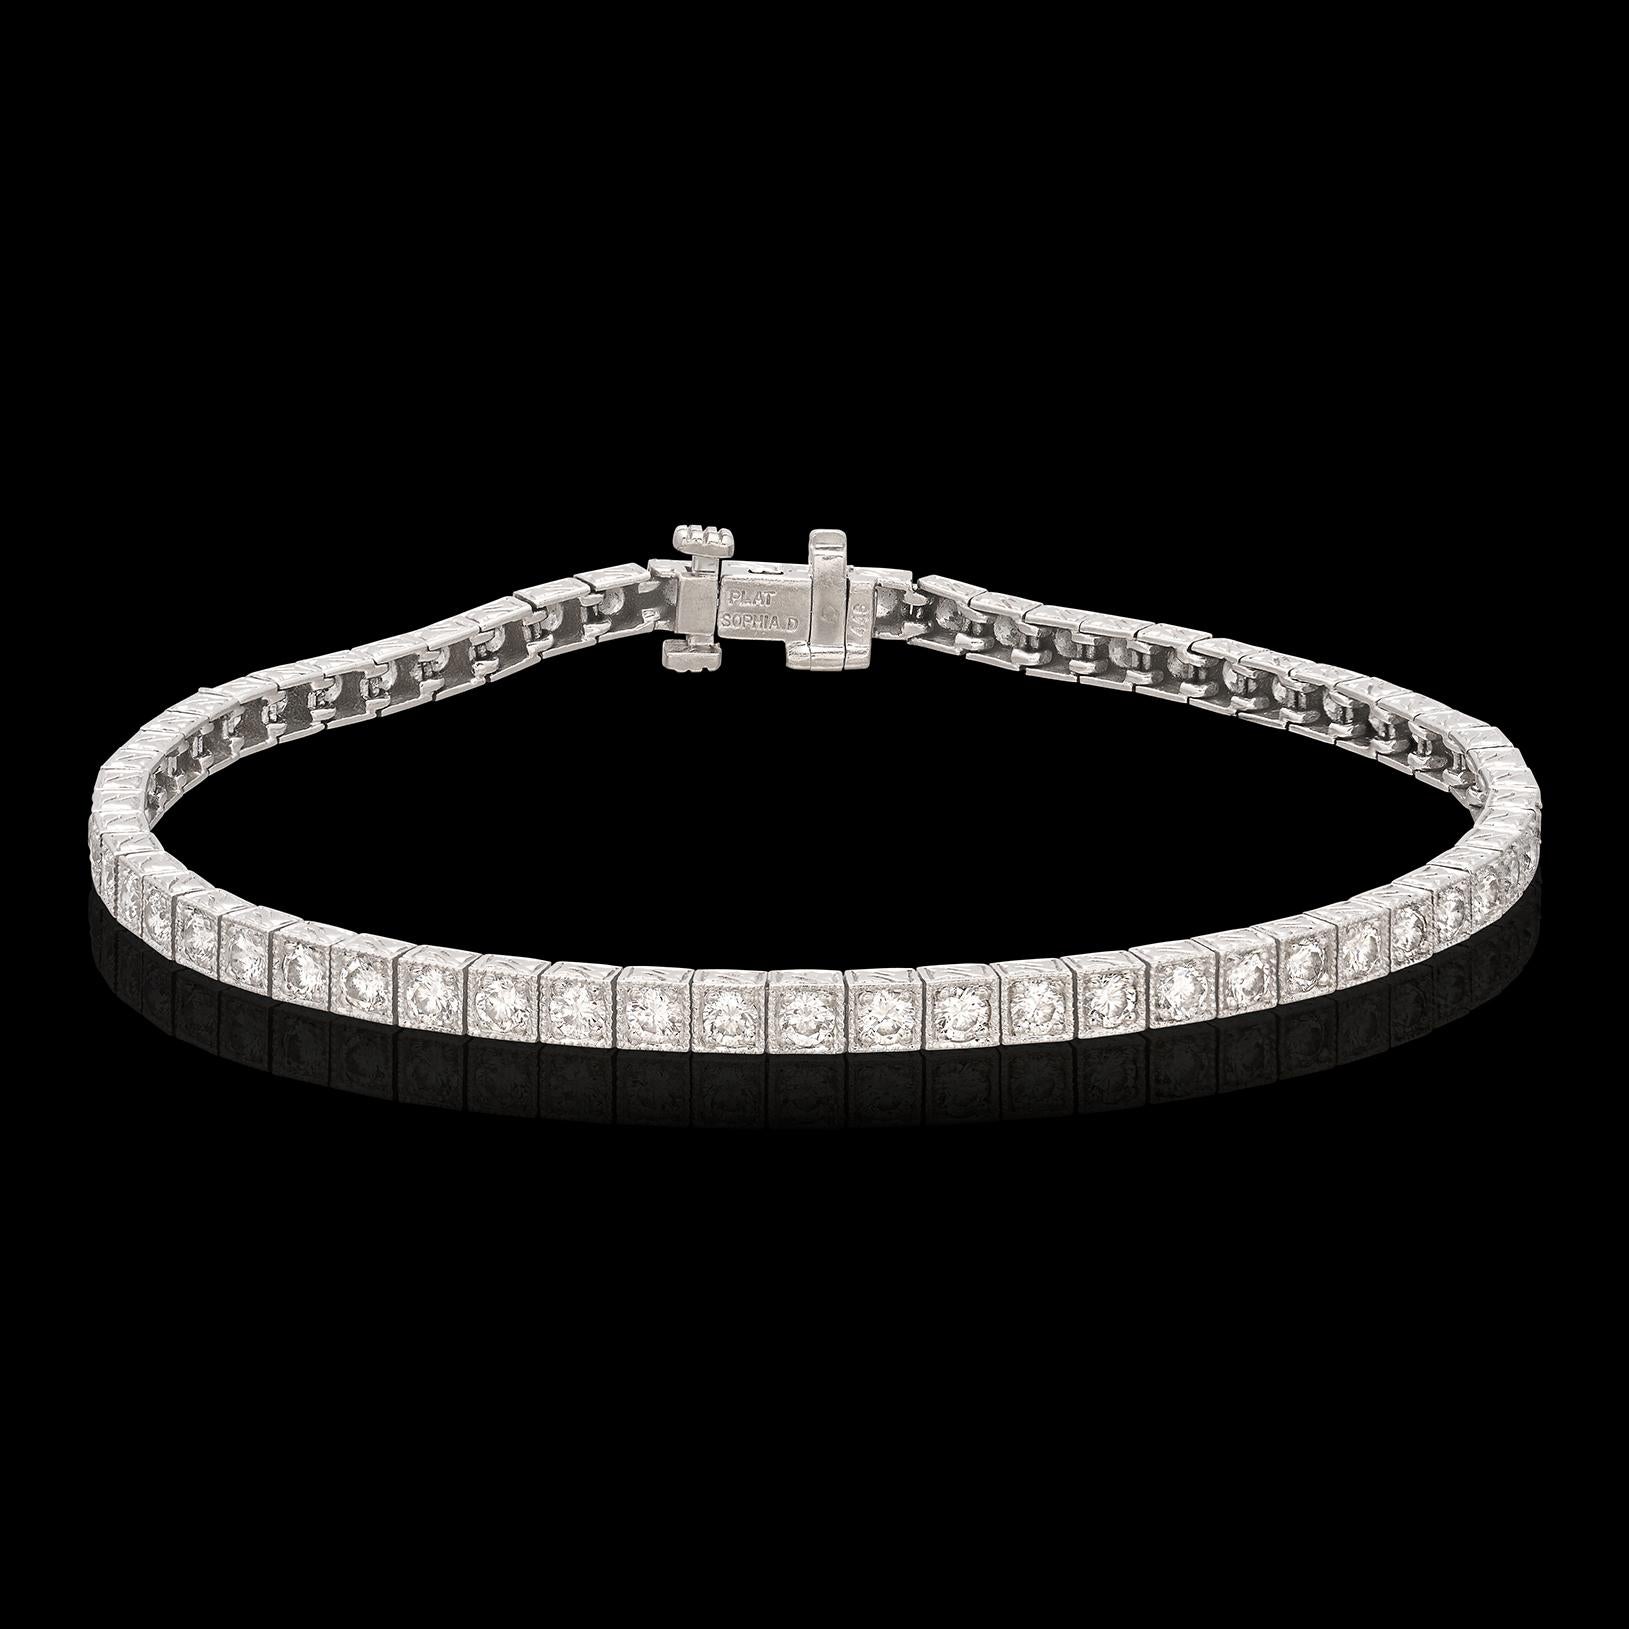 Dieses atemberaubende Diamantarmband der renommierten Designerin Sophia D. verfügt über 57 runde Diamanten von ca. 3,00 Karat, die in einzelnen quadratischen, detaillierten Platinfassungen gefasst sind und dem Stück einen klassischen, geometrischen